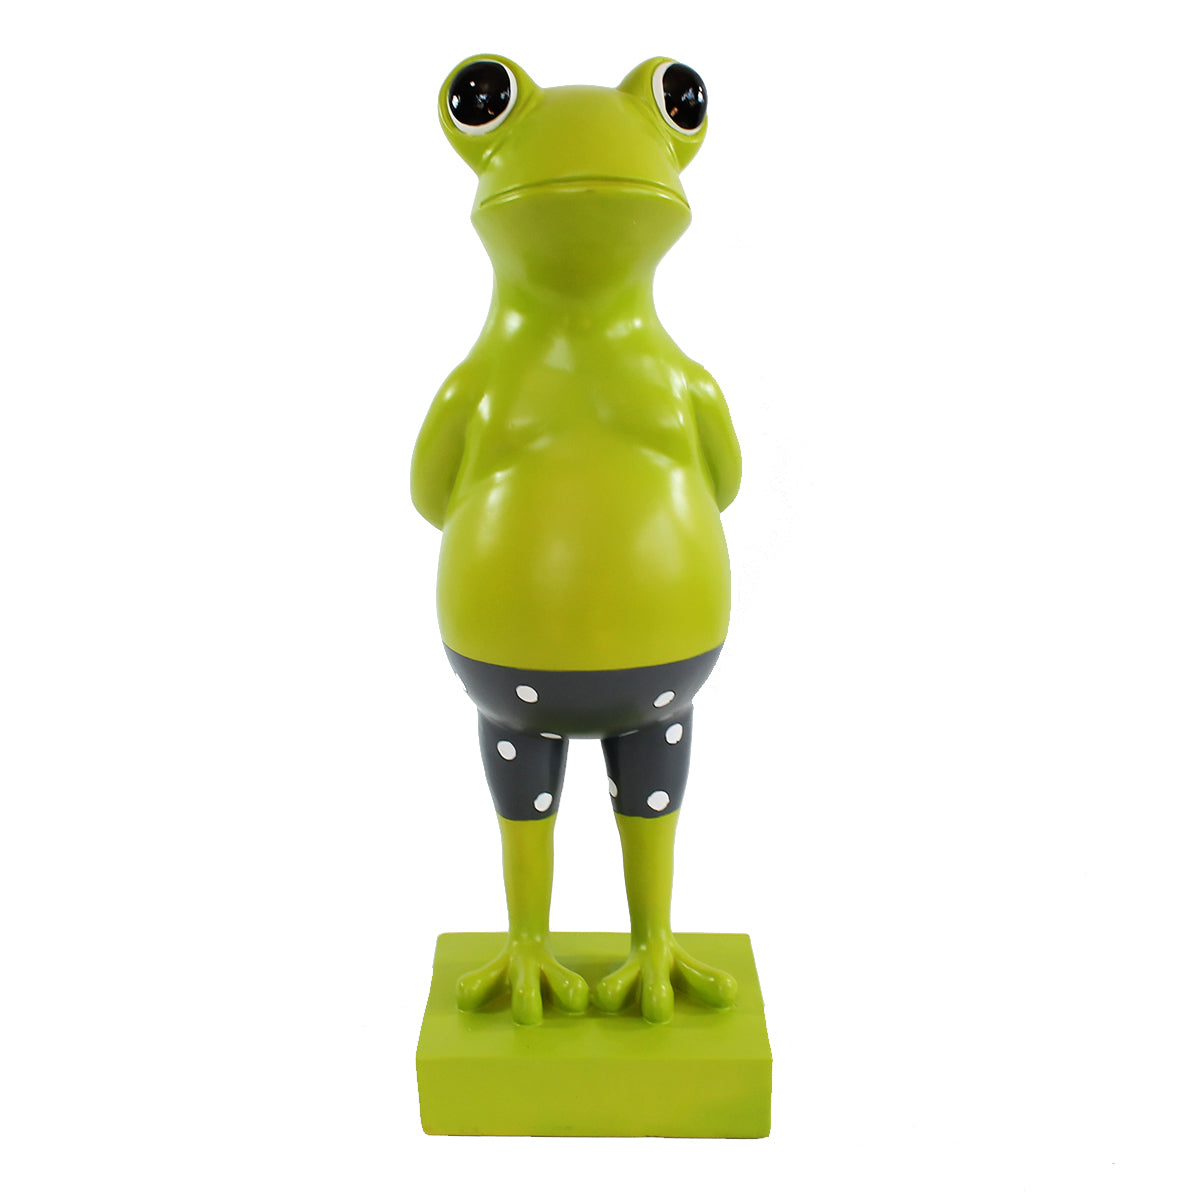 Frosch Dekofigur lustiger Badefrosch 30 cm grün Gartenfigur Frosch Pooldeko Froschfigur